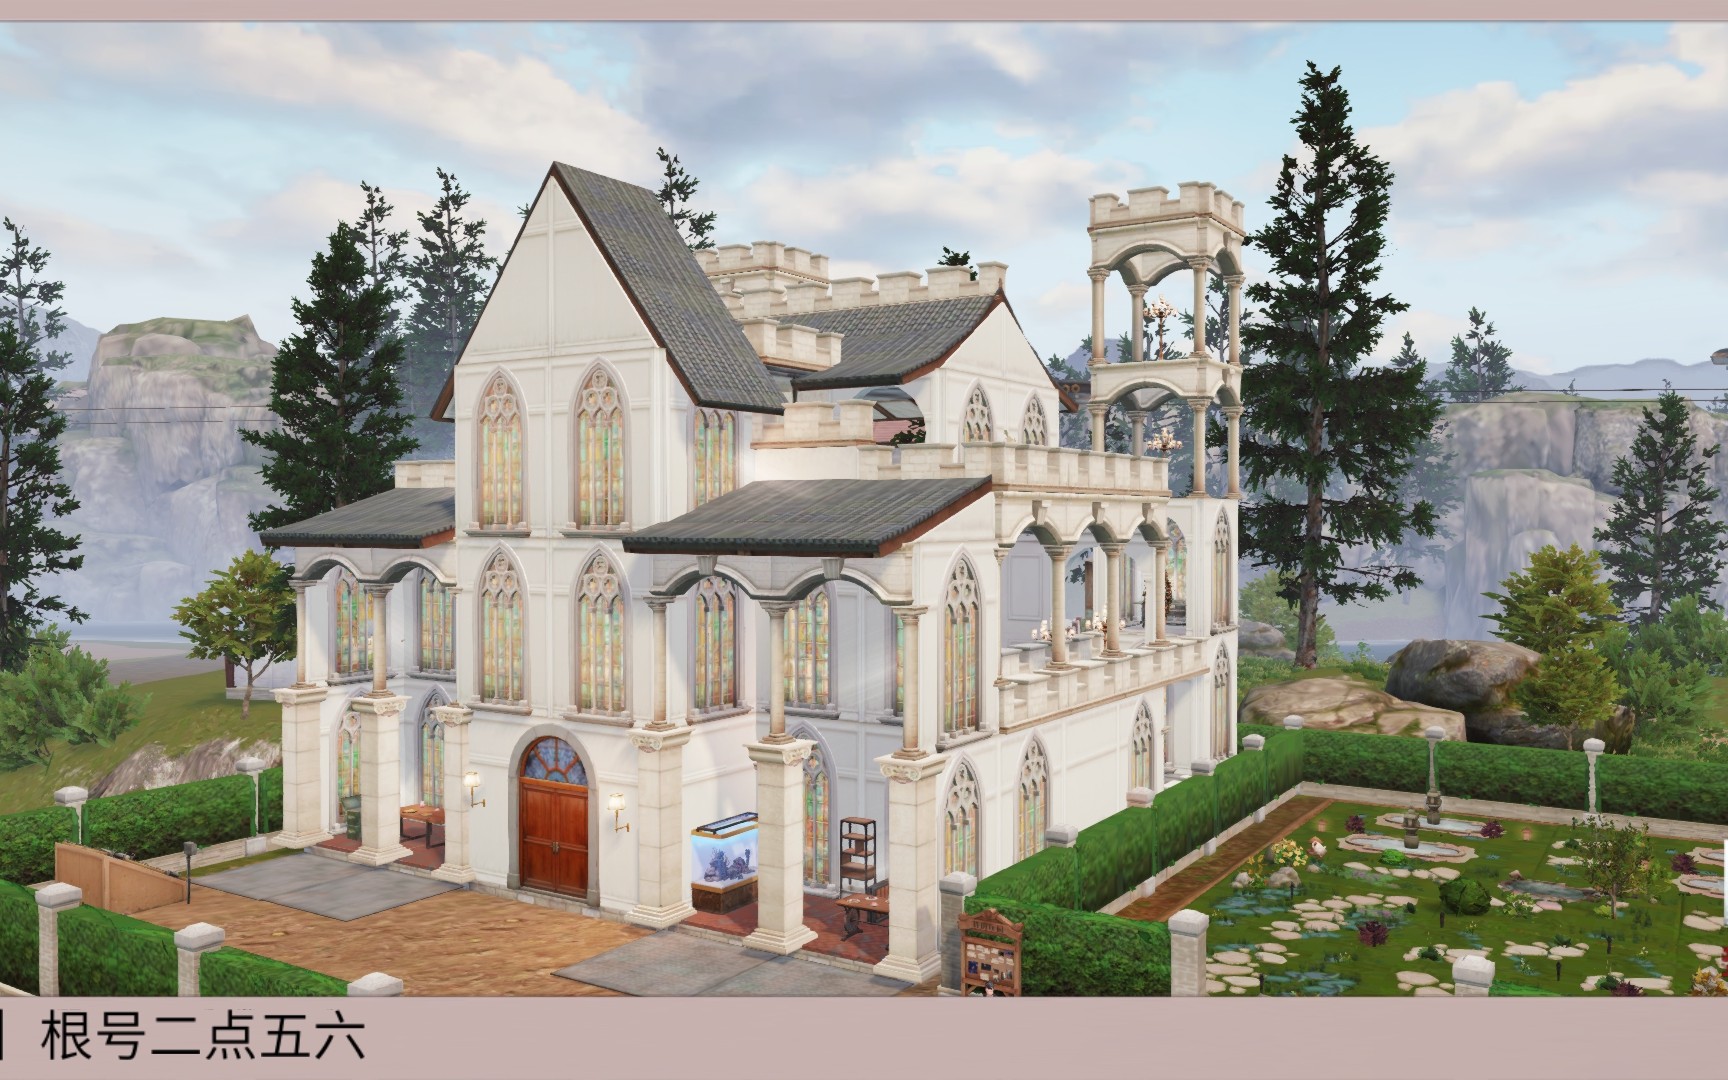 明日之后原创罗马结构建筑斯卡布罗修道院蓝图已发详见p2